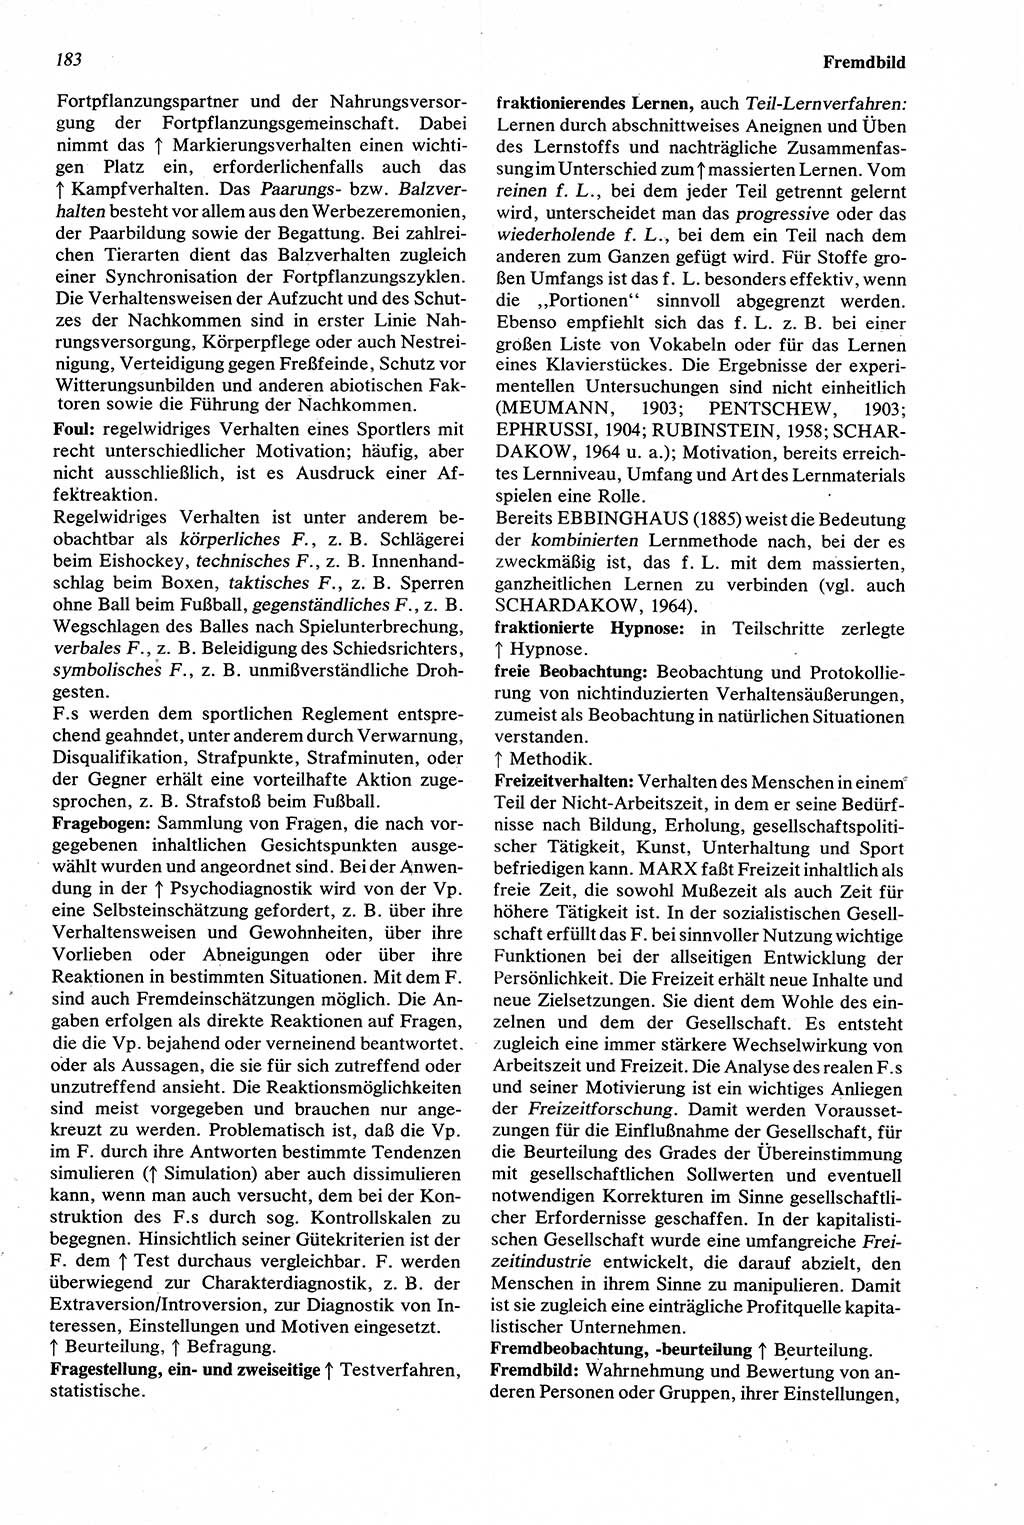 Wörterbuch der Psychologie [Deutsche Demokratische Republik (DDR)] 1976, Seite 183 (Wb. Psych. DDR 1976, S. 183)